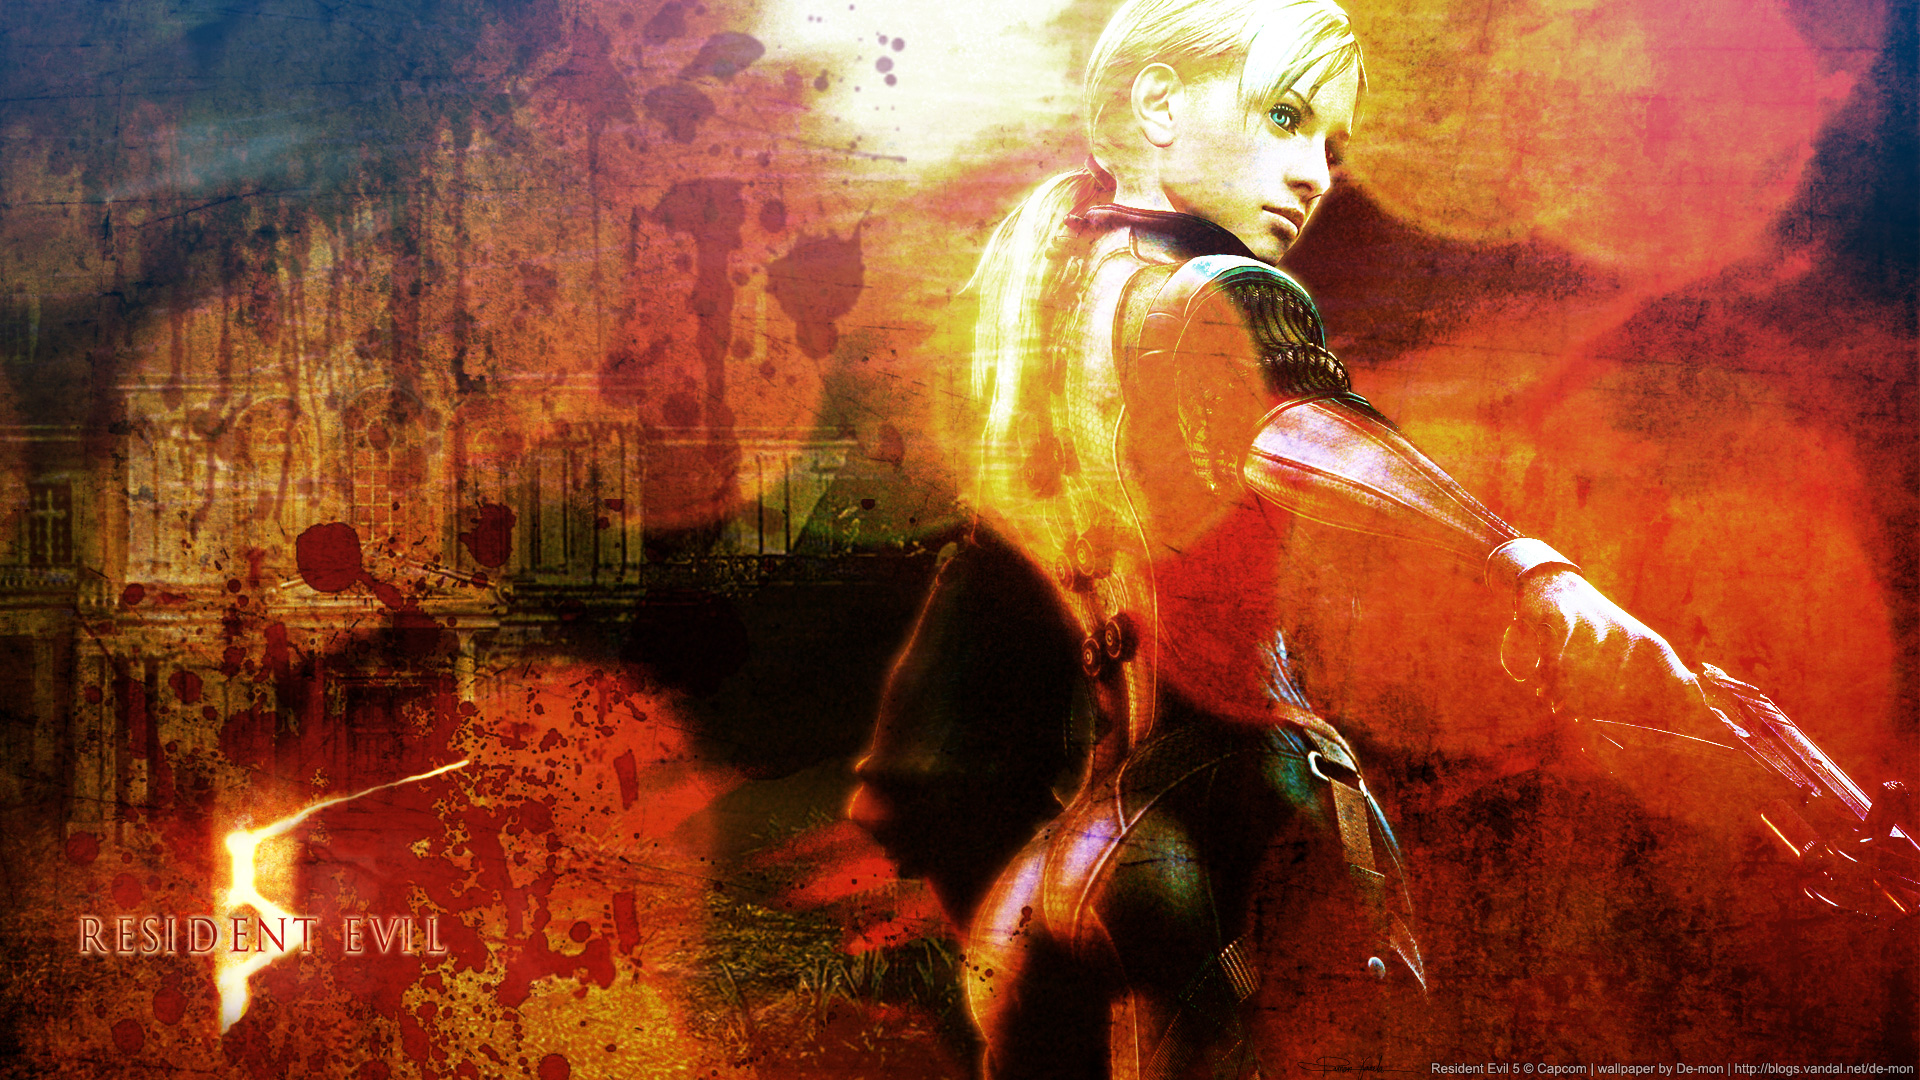 Resident Evil 5 , HD Wallpaper & Backgrounds